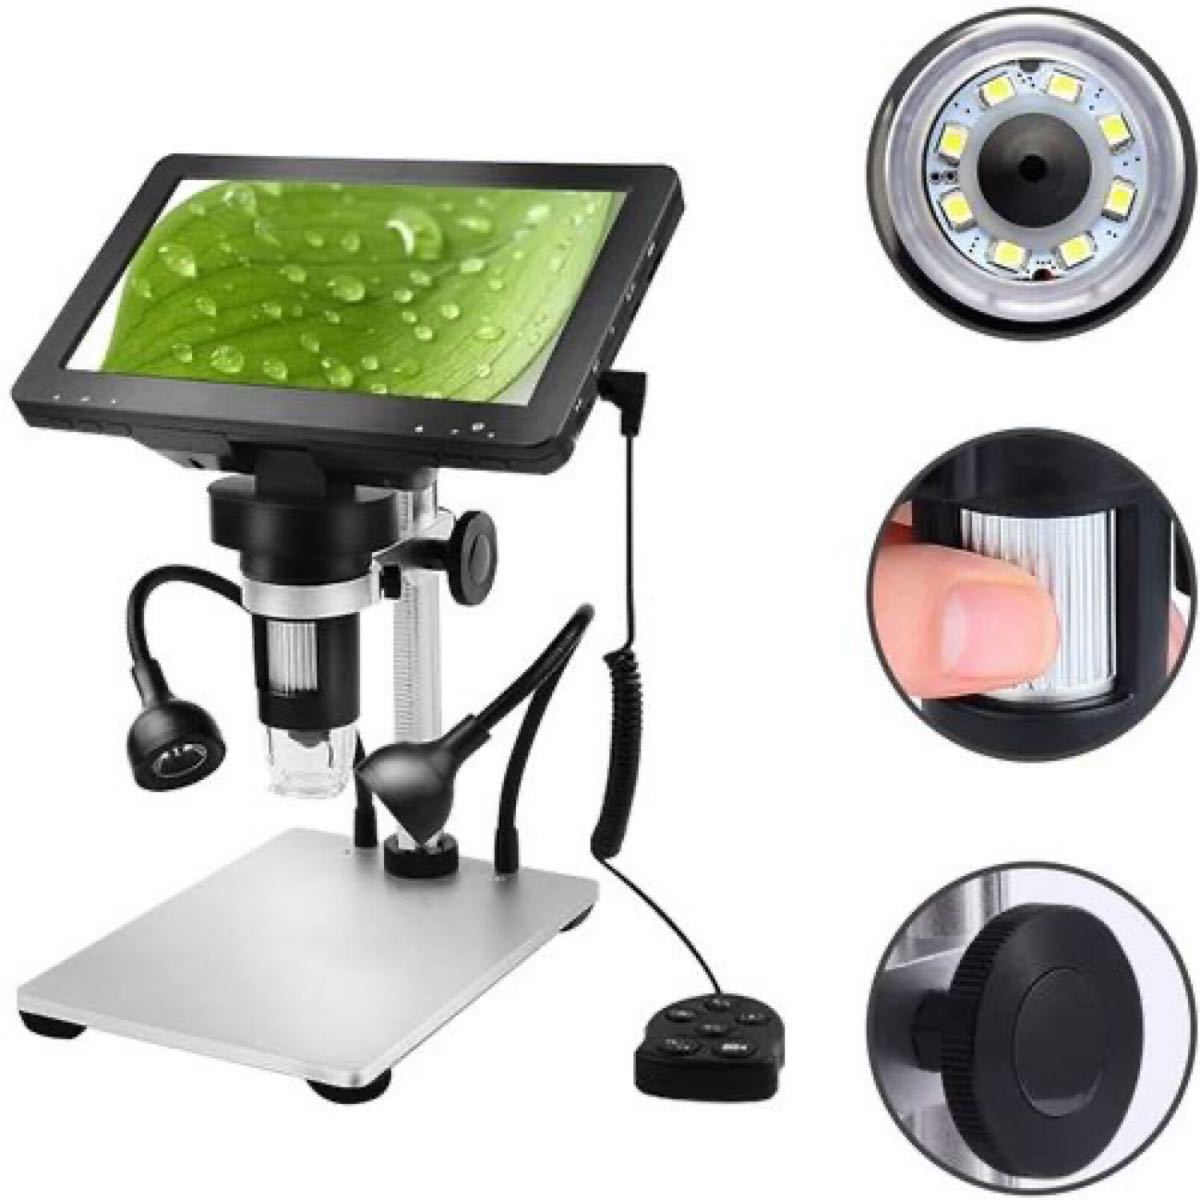 デジタル顕微鏡 マイクロスコープ USB顕微鏡 最大倍率1200X LEDライト